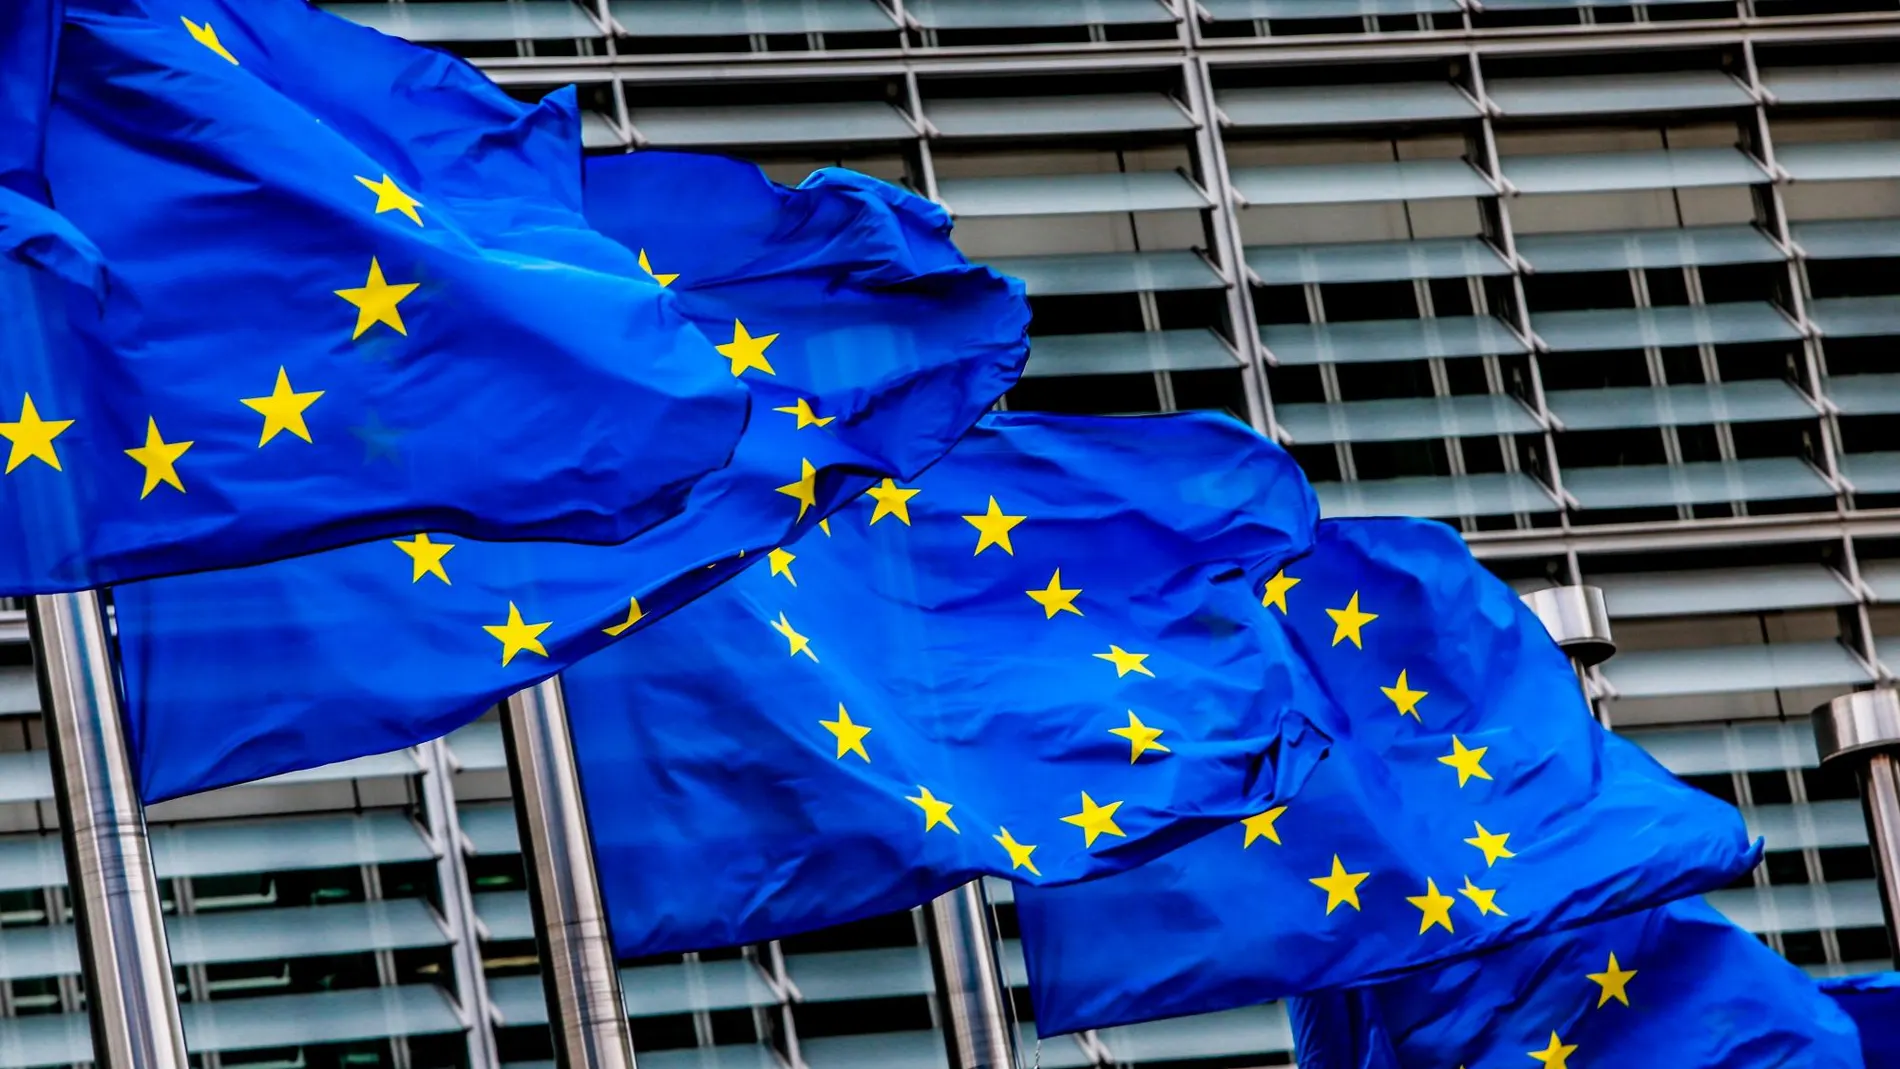 Banderas de la Unión Europea ondean ante la sede de la Comisión Europea en Bruselas